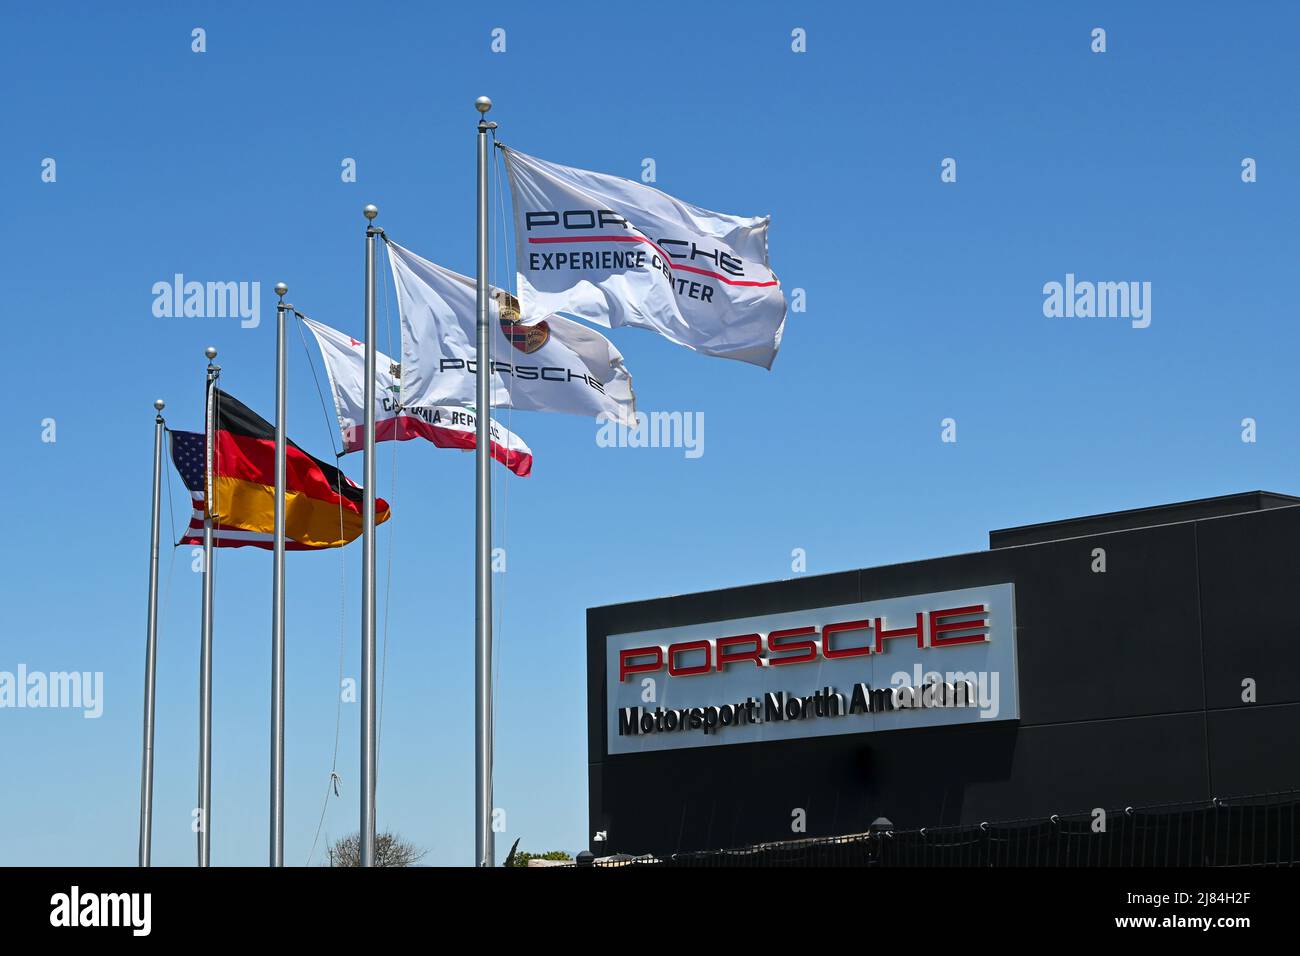 CARSON, KALIFORNIEN - 11. MAI 2022: Flaggen und Schilder im Porsche Experience Center, wo Fahrer eine Vielzahl von Erfahrungen auf einer 53 Hektar großen Strecke genießen können. Stockfoto